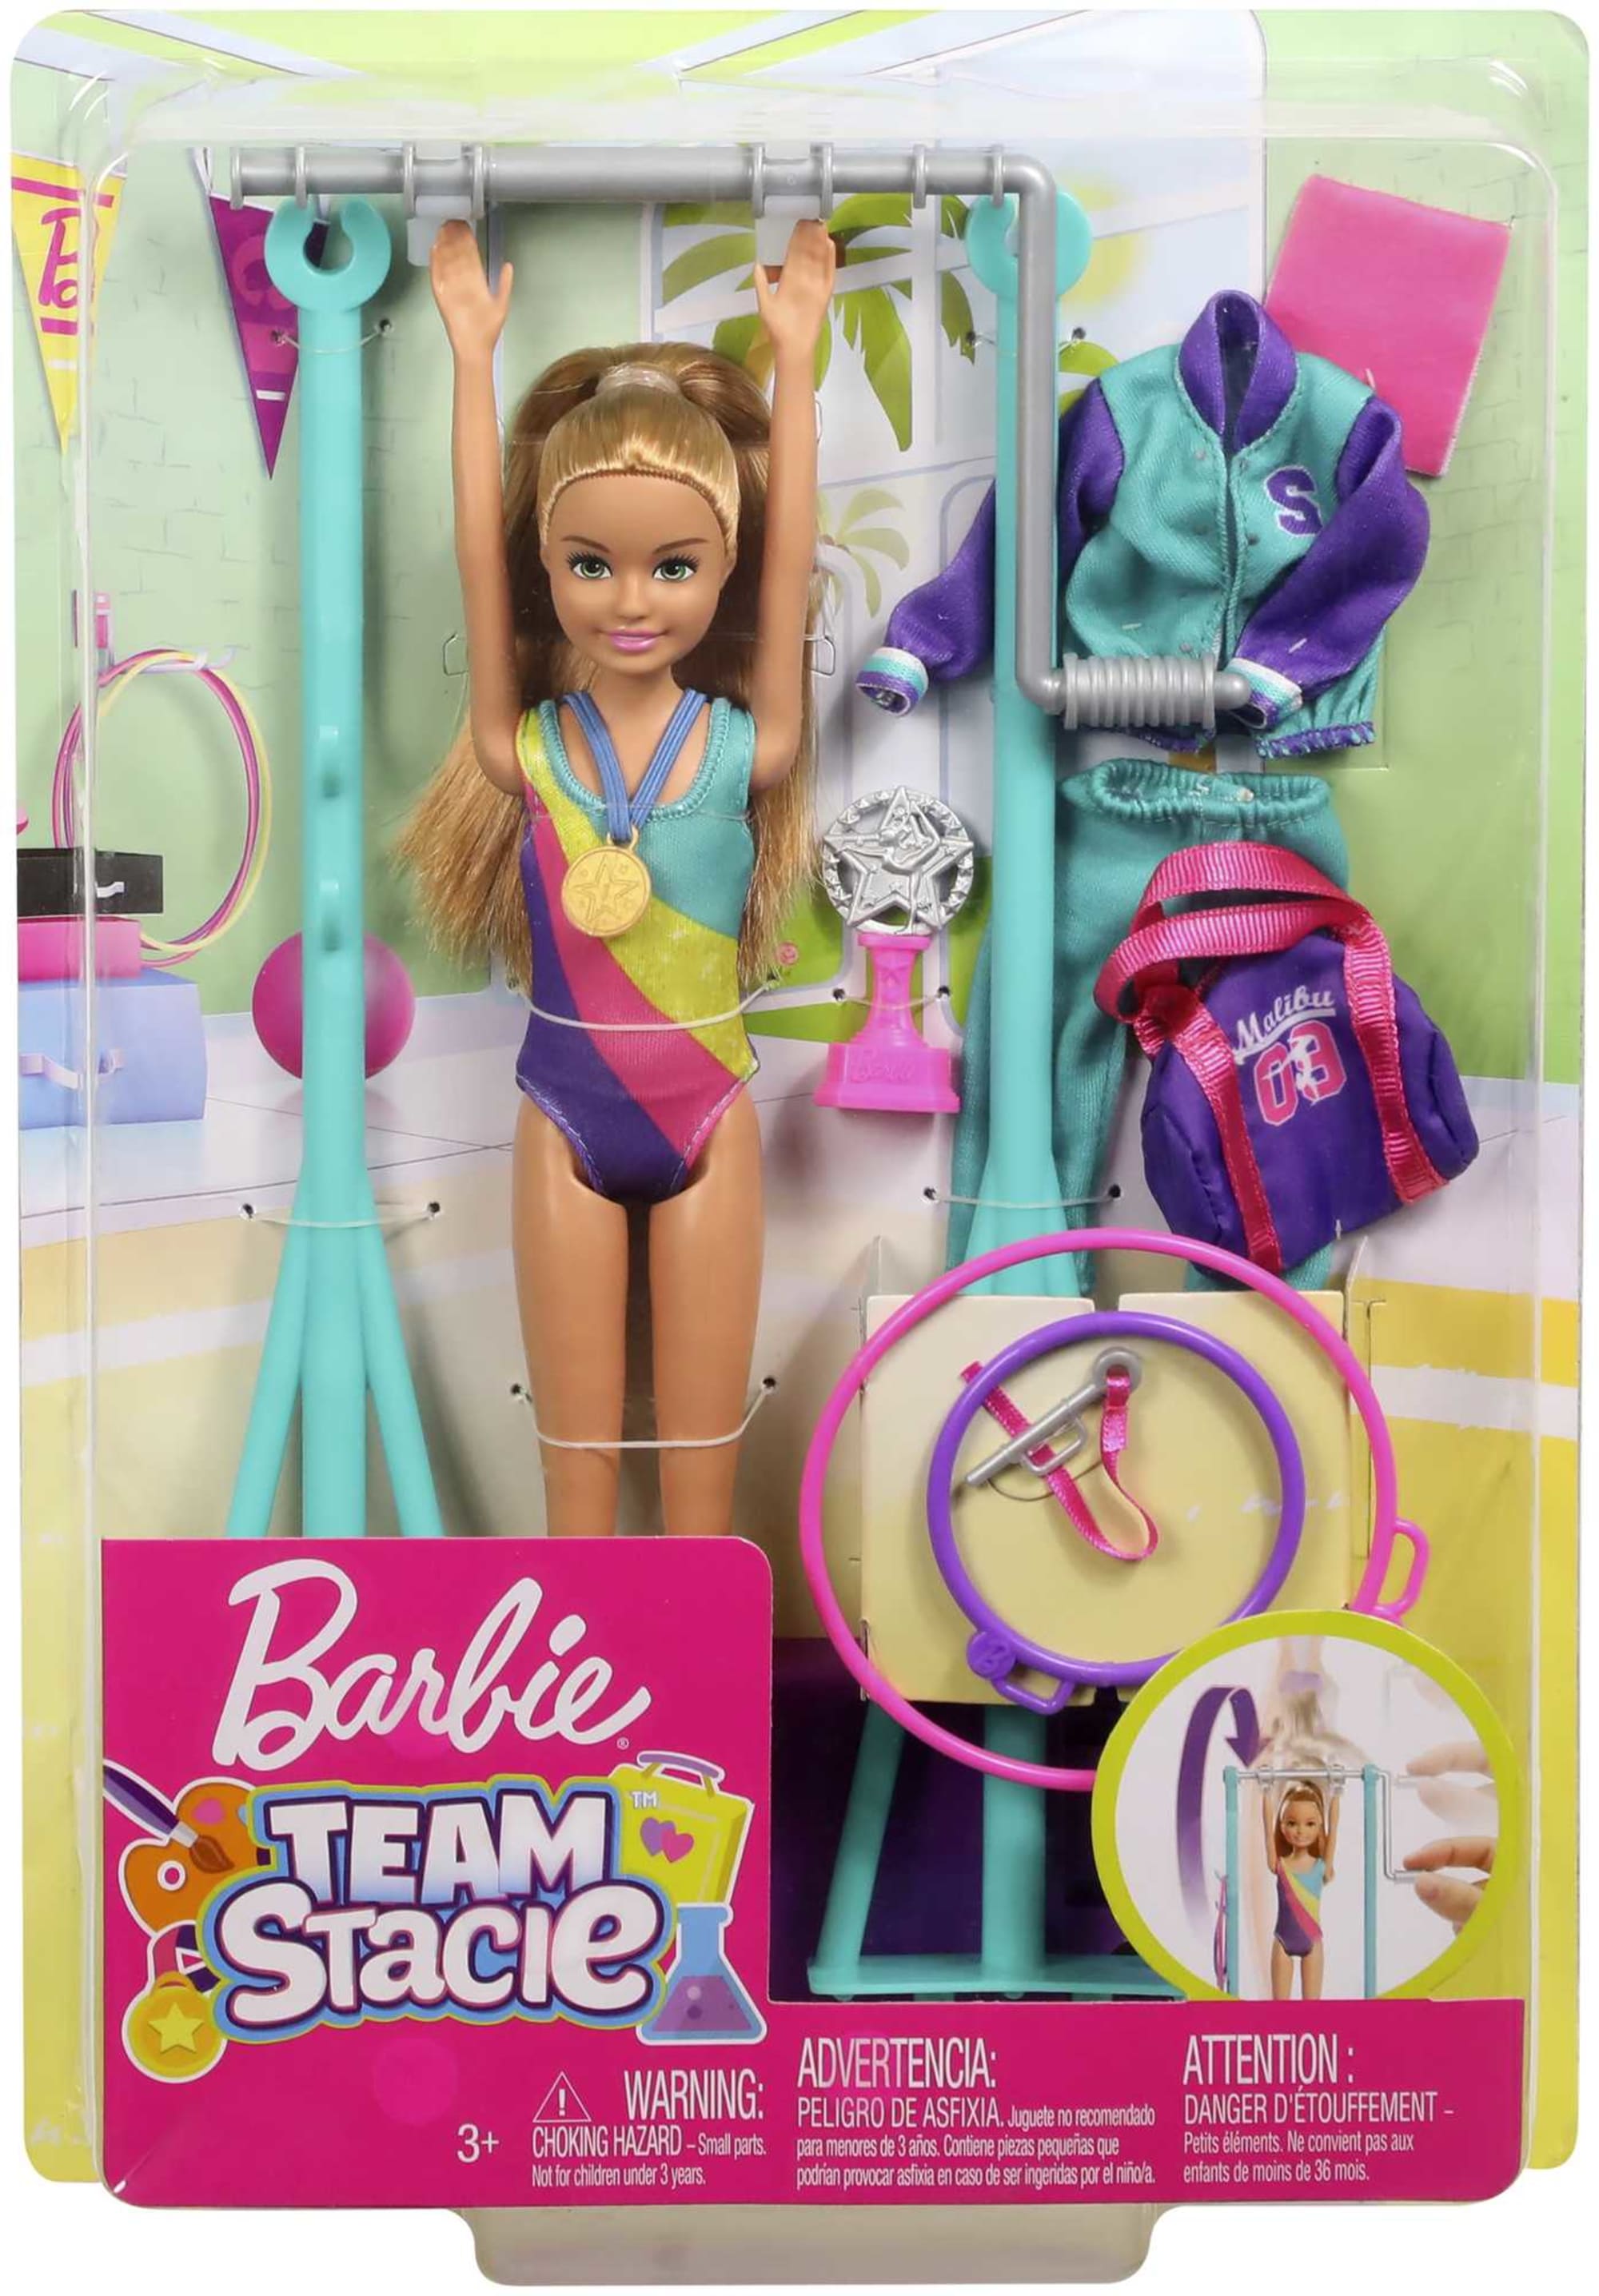 Barbie Team Stacie Doll & Accessories | Mattel